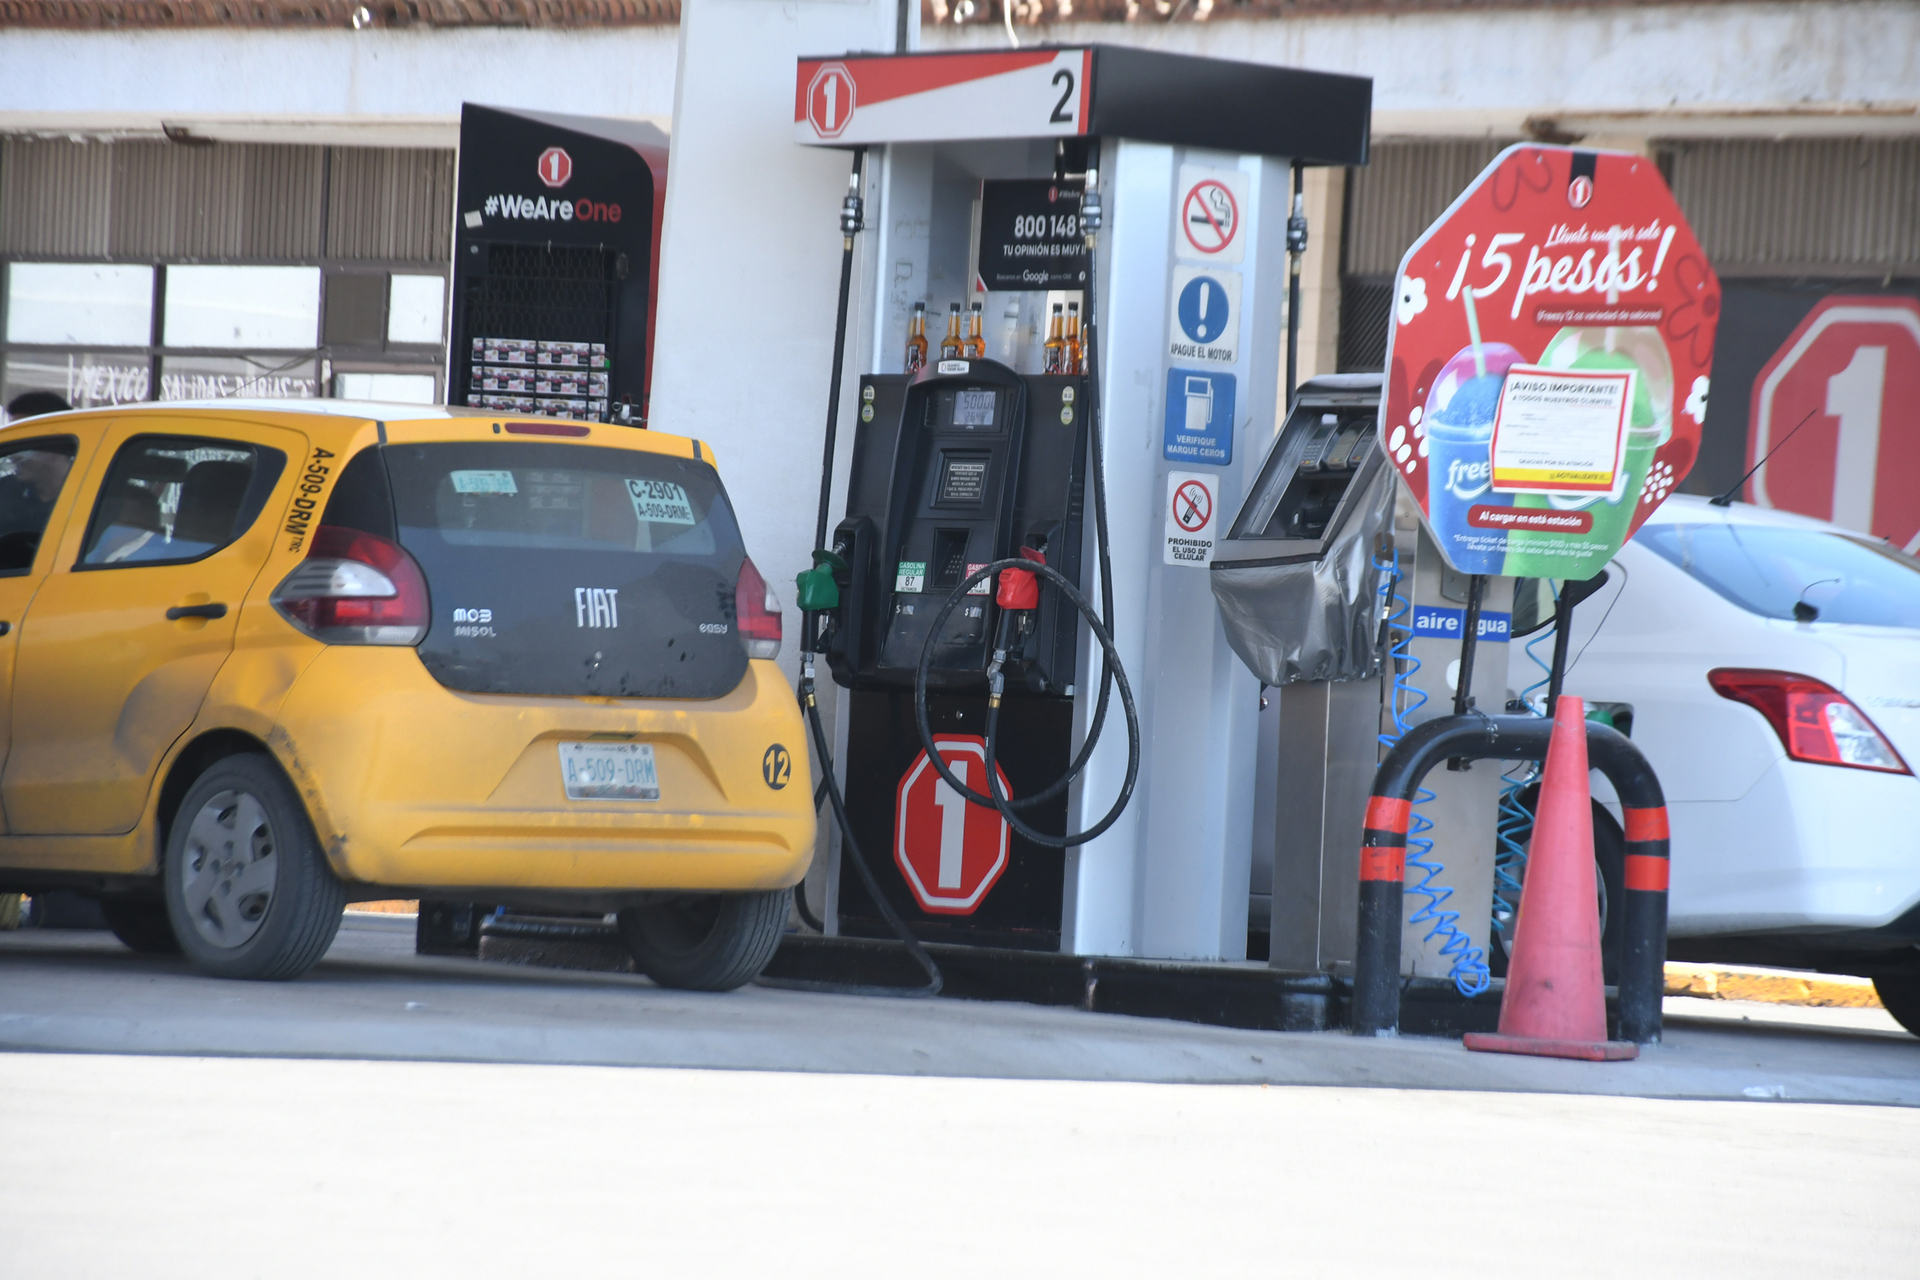 Acercan gasolineras a escuelas y negocios en Torreón, ahora la distancia será de 15 metros y no de 150. Noticias en tiempo real